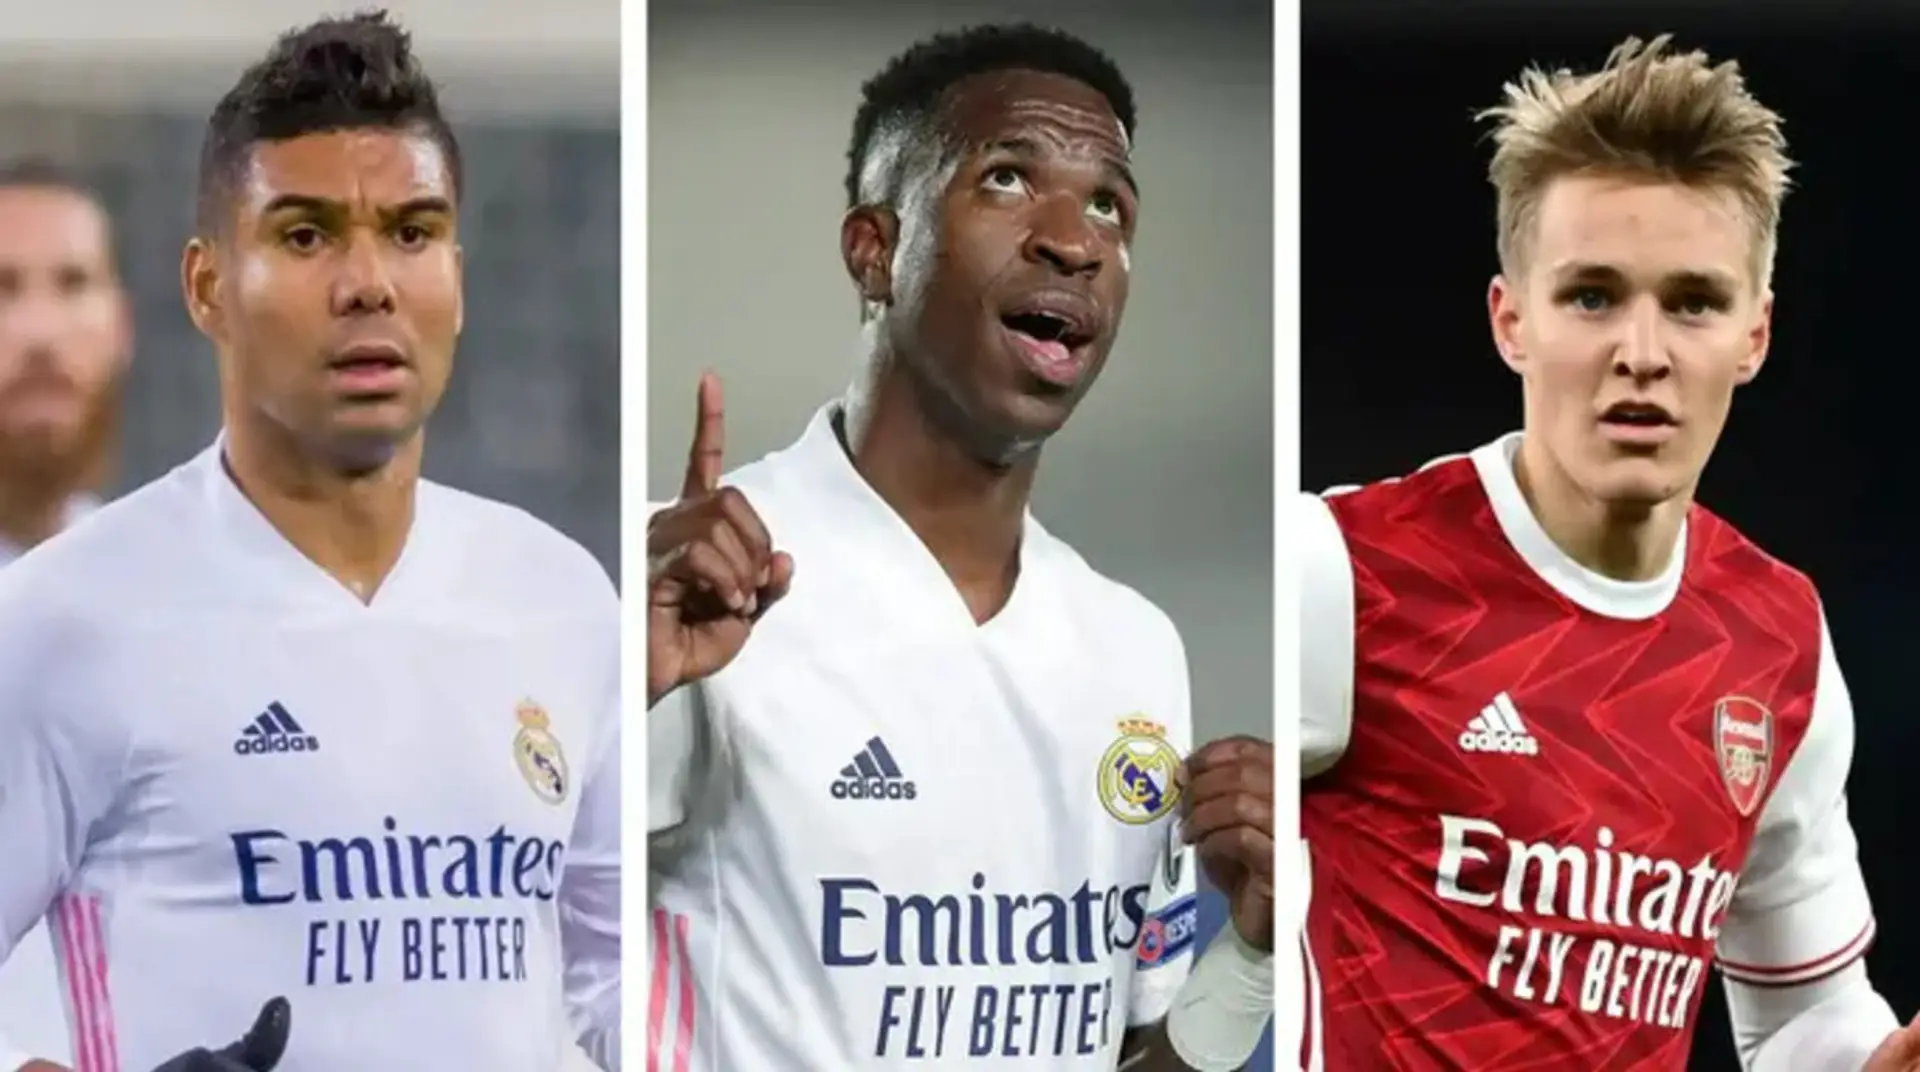 El Madrid identifica a 5 jugadores intransferibles, quedando fuera varios grandes nombres (fiabilidad: 4 estrellas)